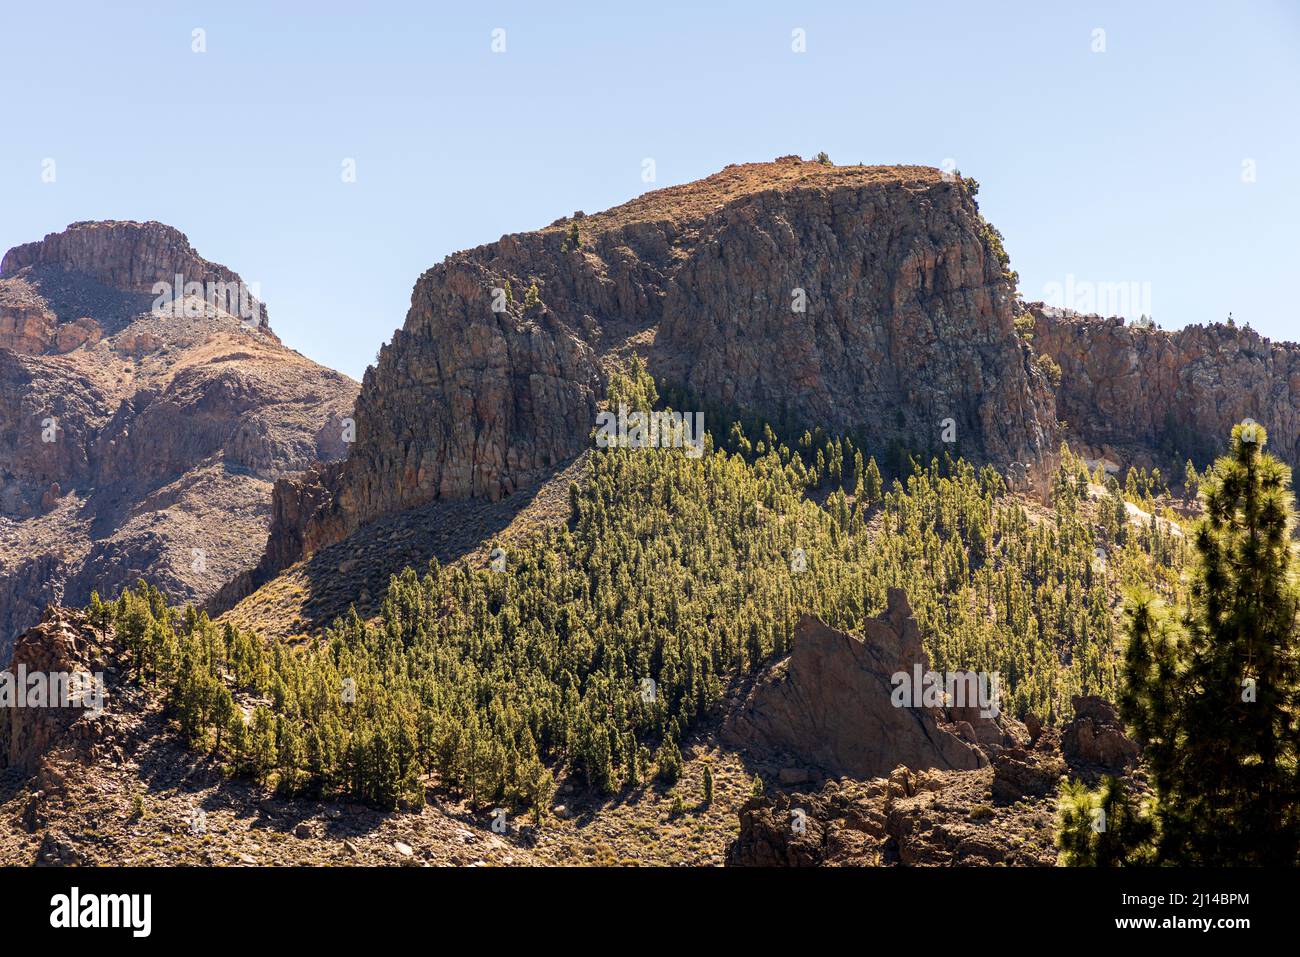 El Sombrero de Chasna y la cresta rocosa con pinos canarios en el paisaje volcánico del Parque Nacional Las Canadas del Teide, Tenerife, Canarias Foto de stock